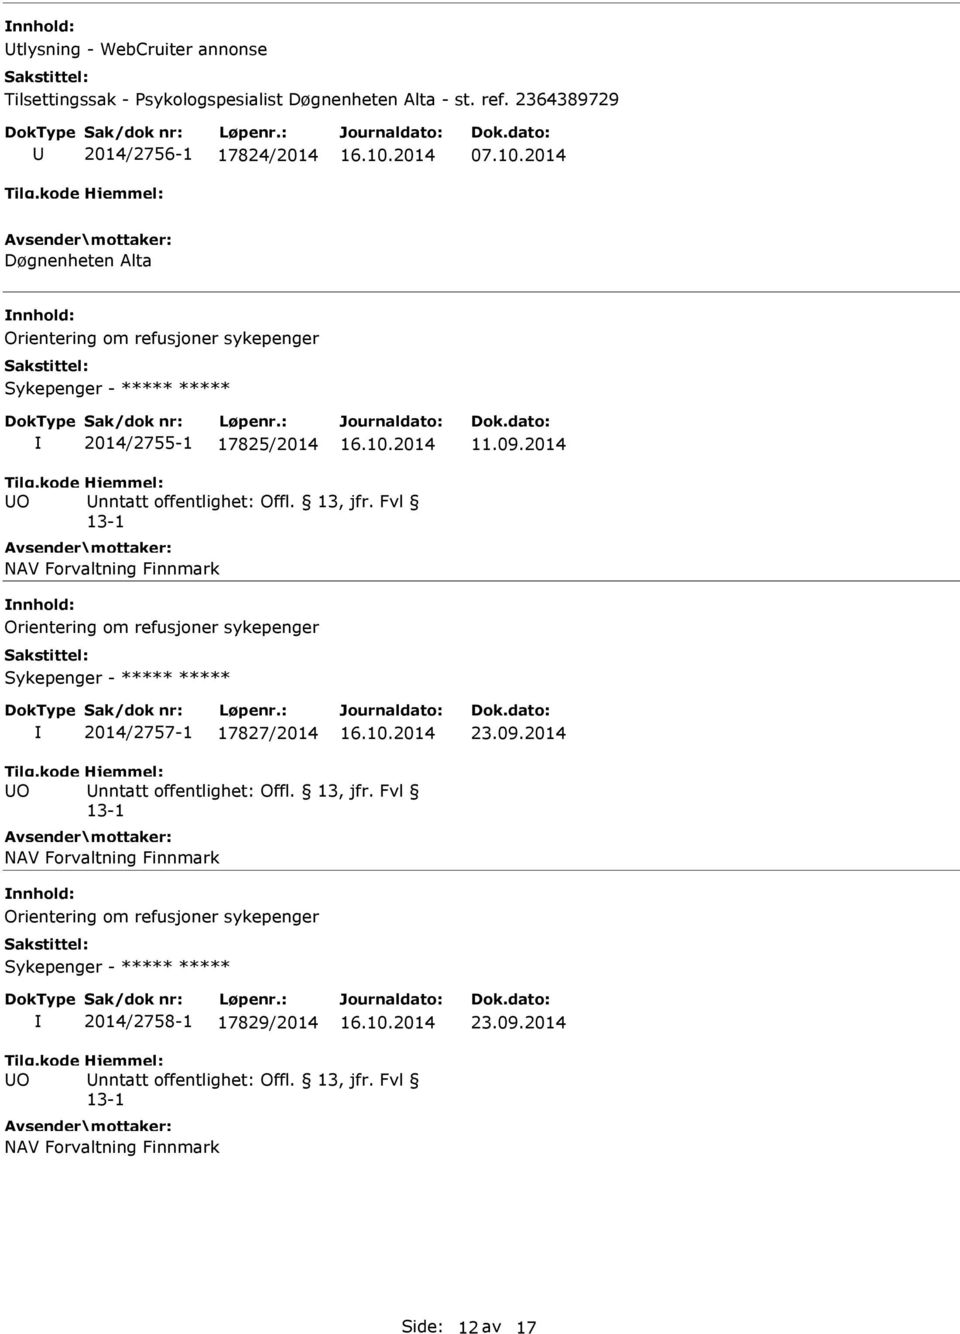 2014 O nntatt offentlighet: Offl. 13, jfr. Fvl NAV Forvaltning Finnmark Orientering om refusjoner sykepenger Sykepenger - ***** ***** 2014/2757-1 17827/2014 23.